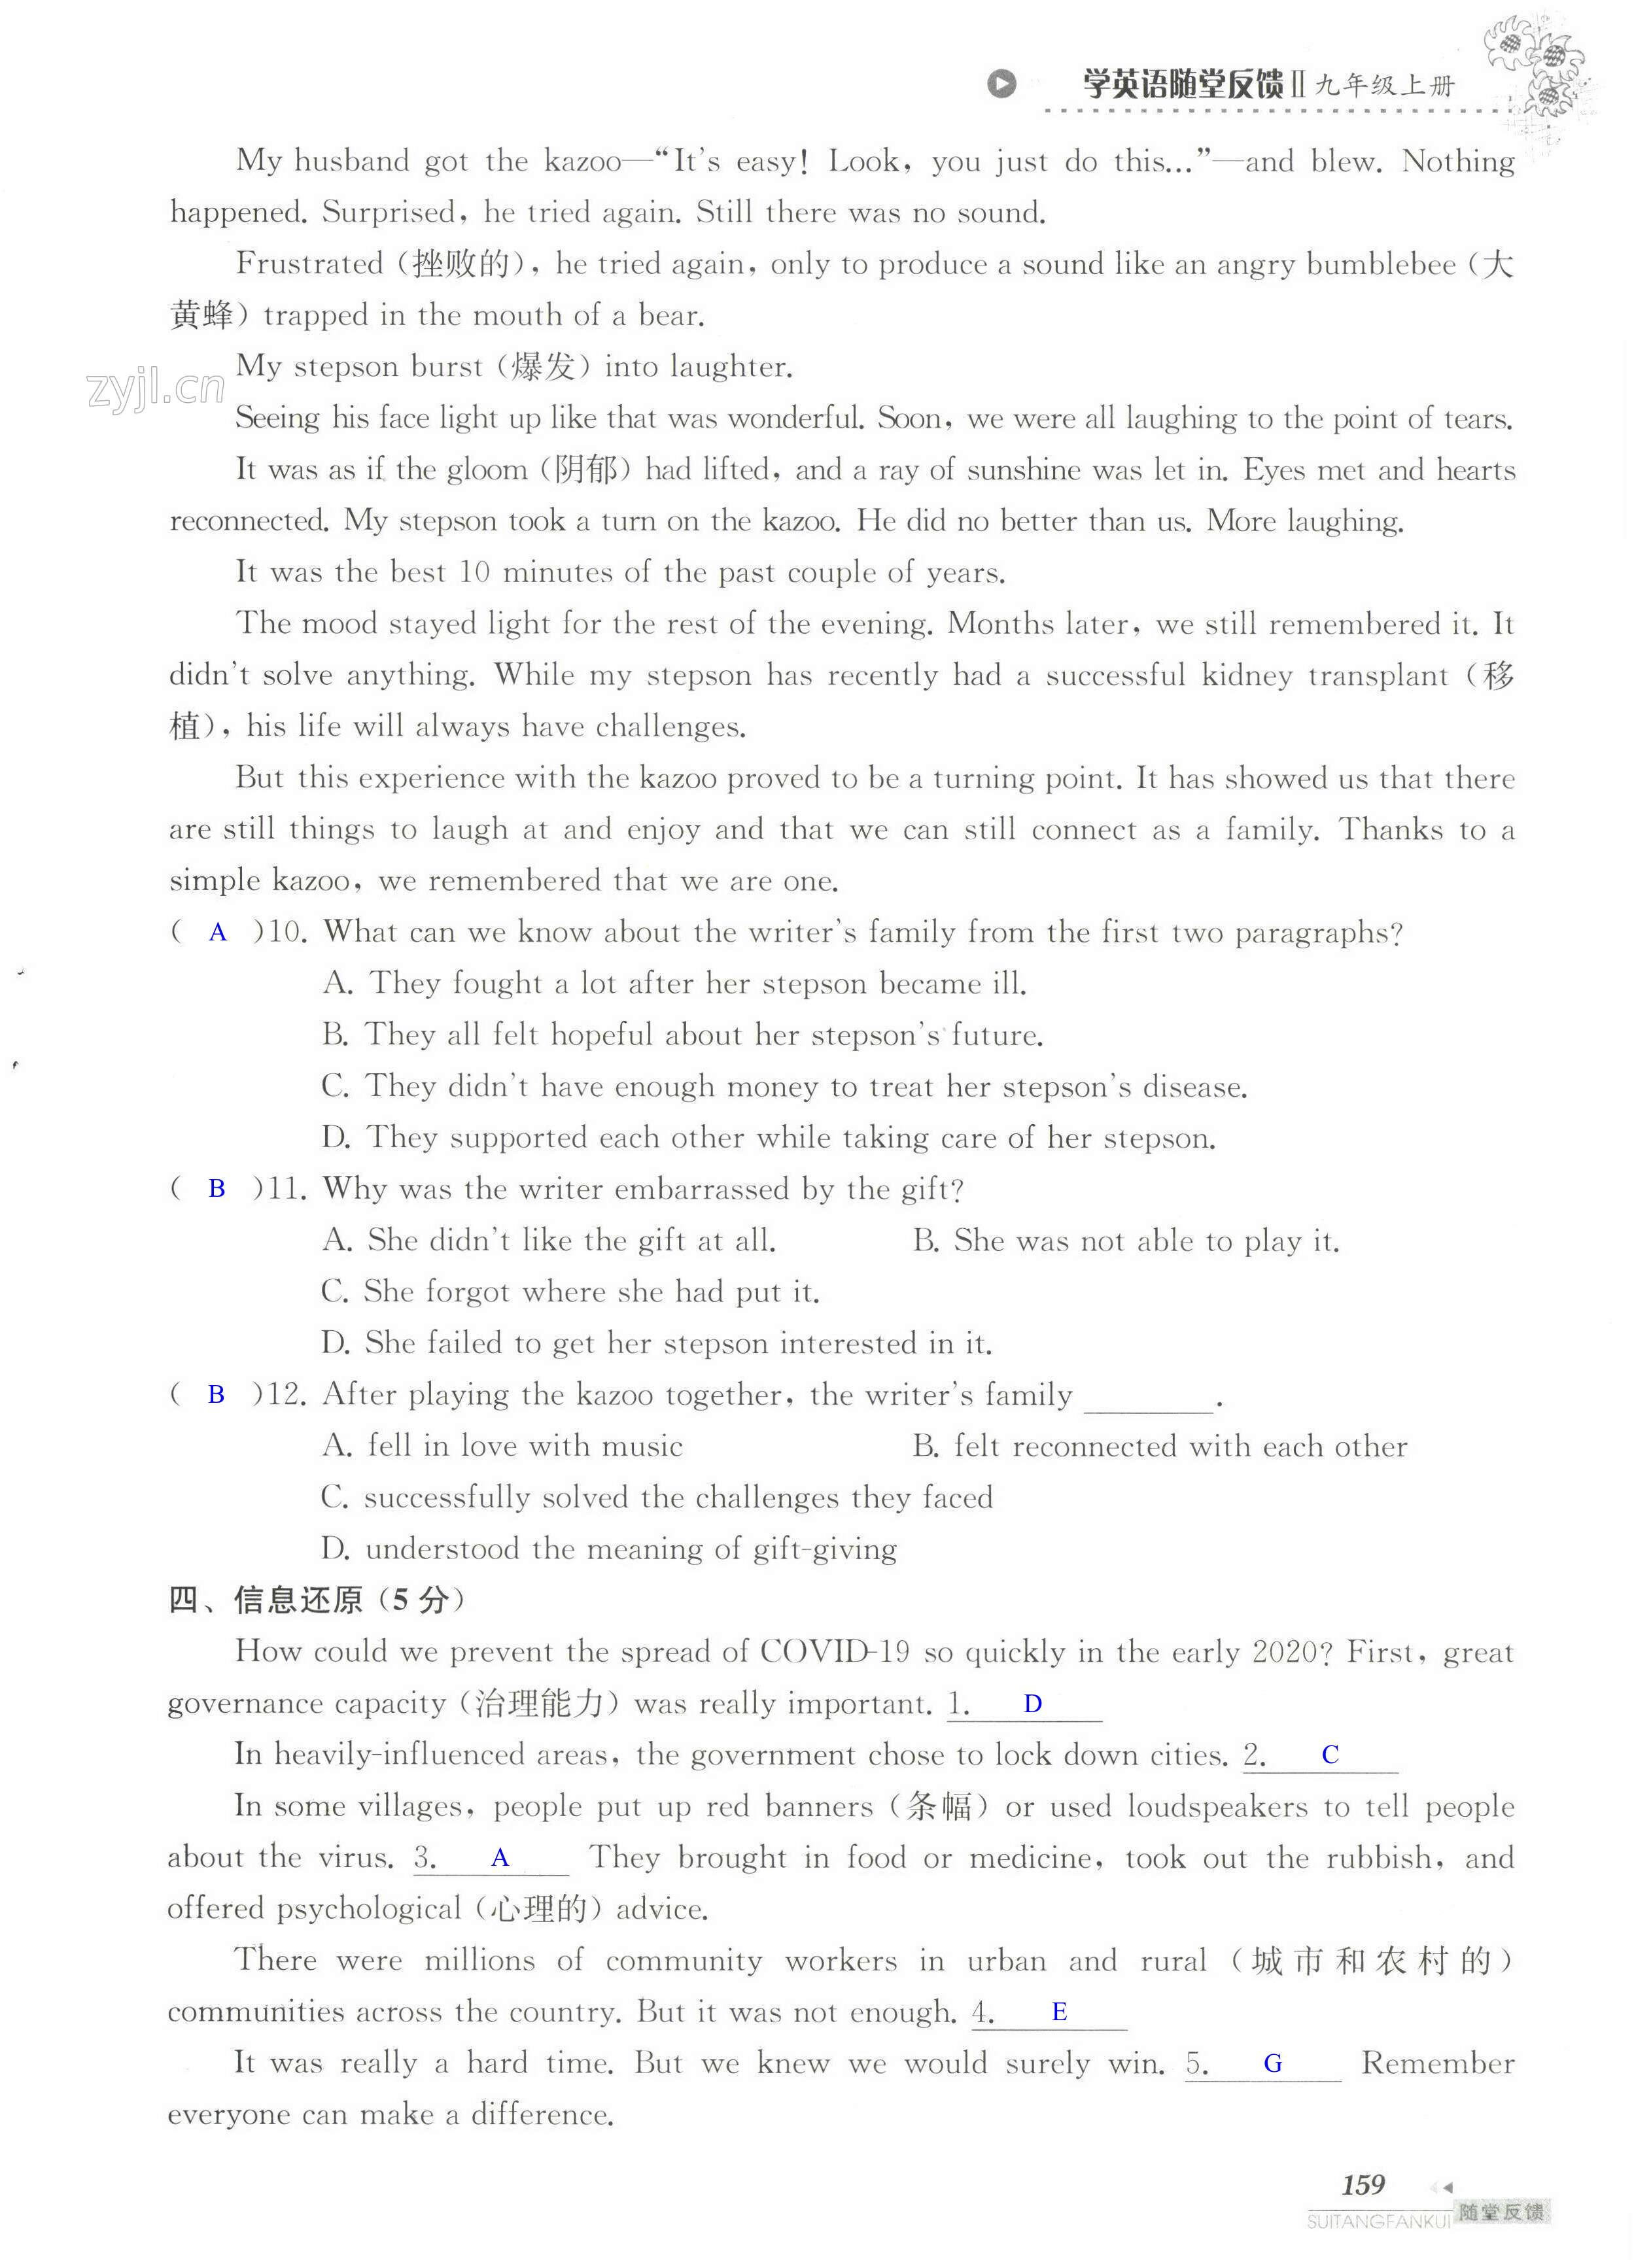 单元综合测试卷 Test for Unit 2 of 9A - 第159页